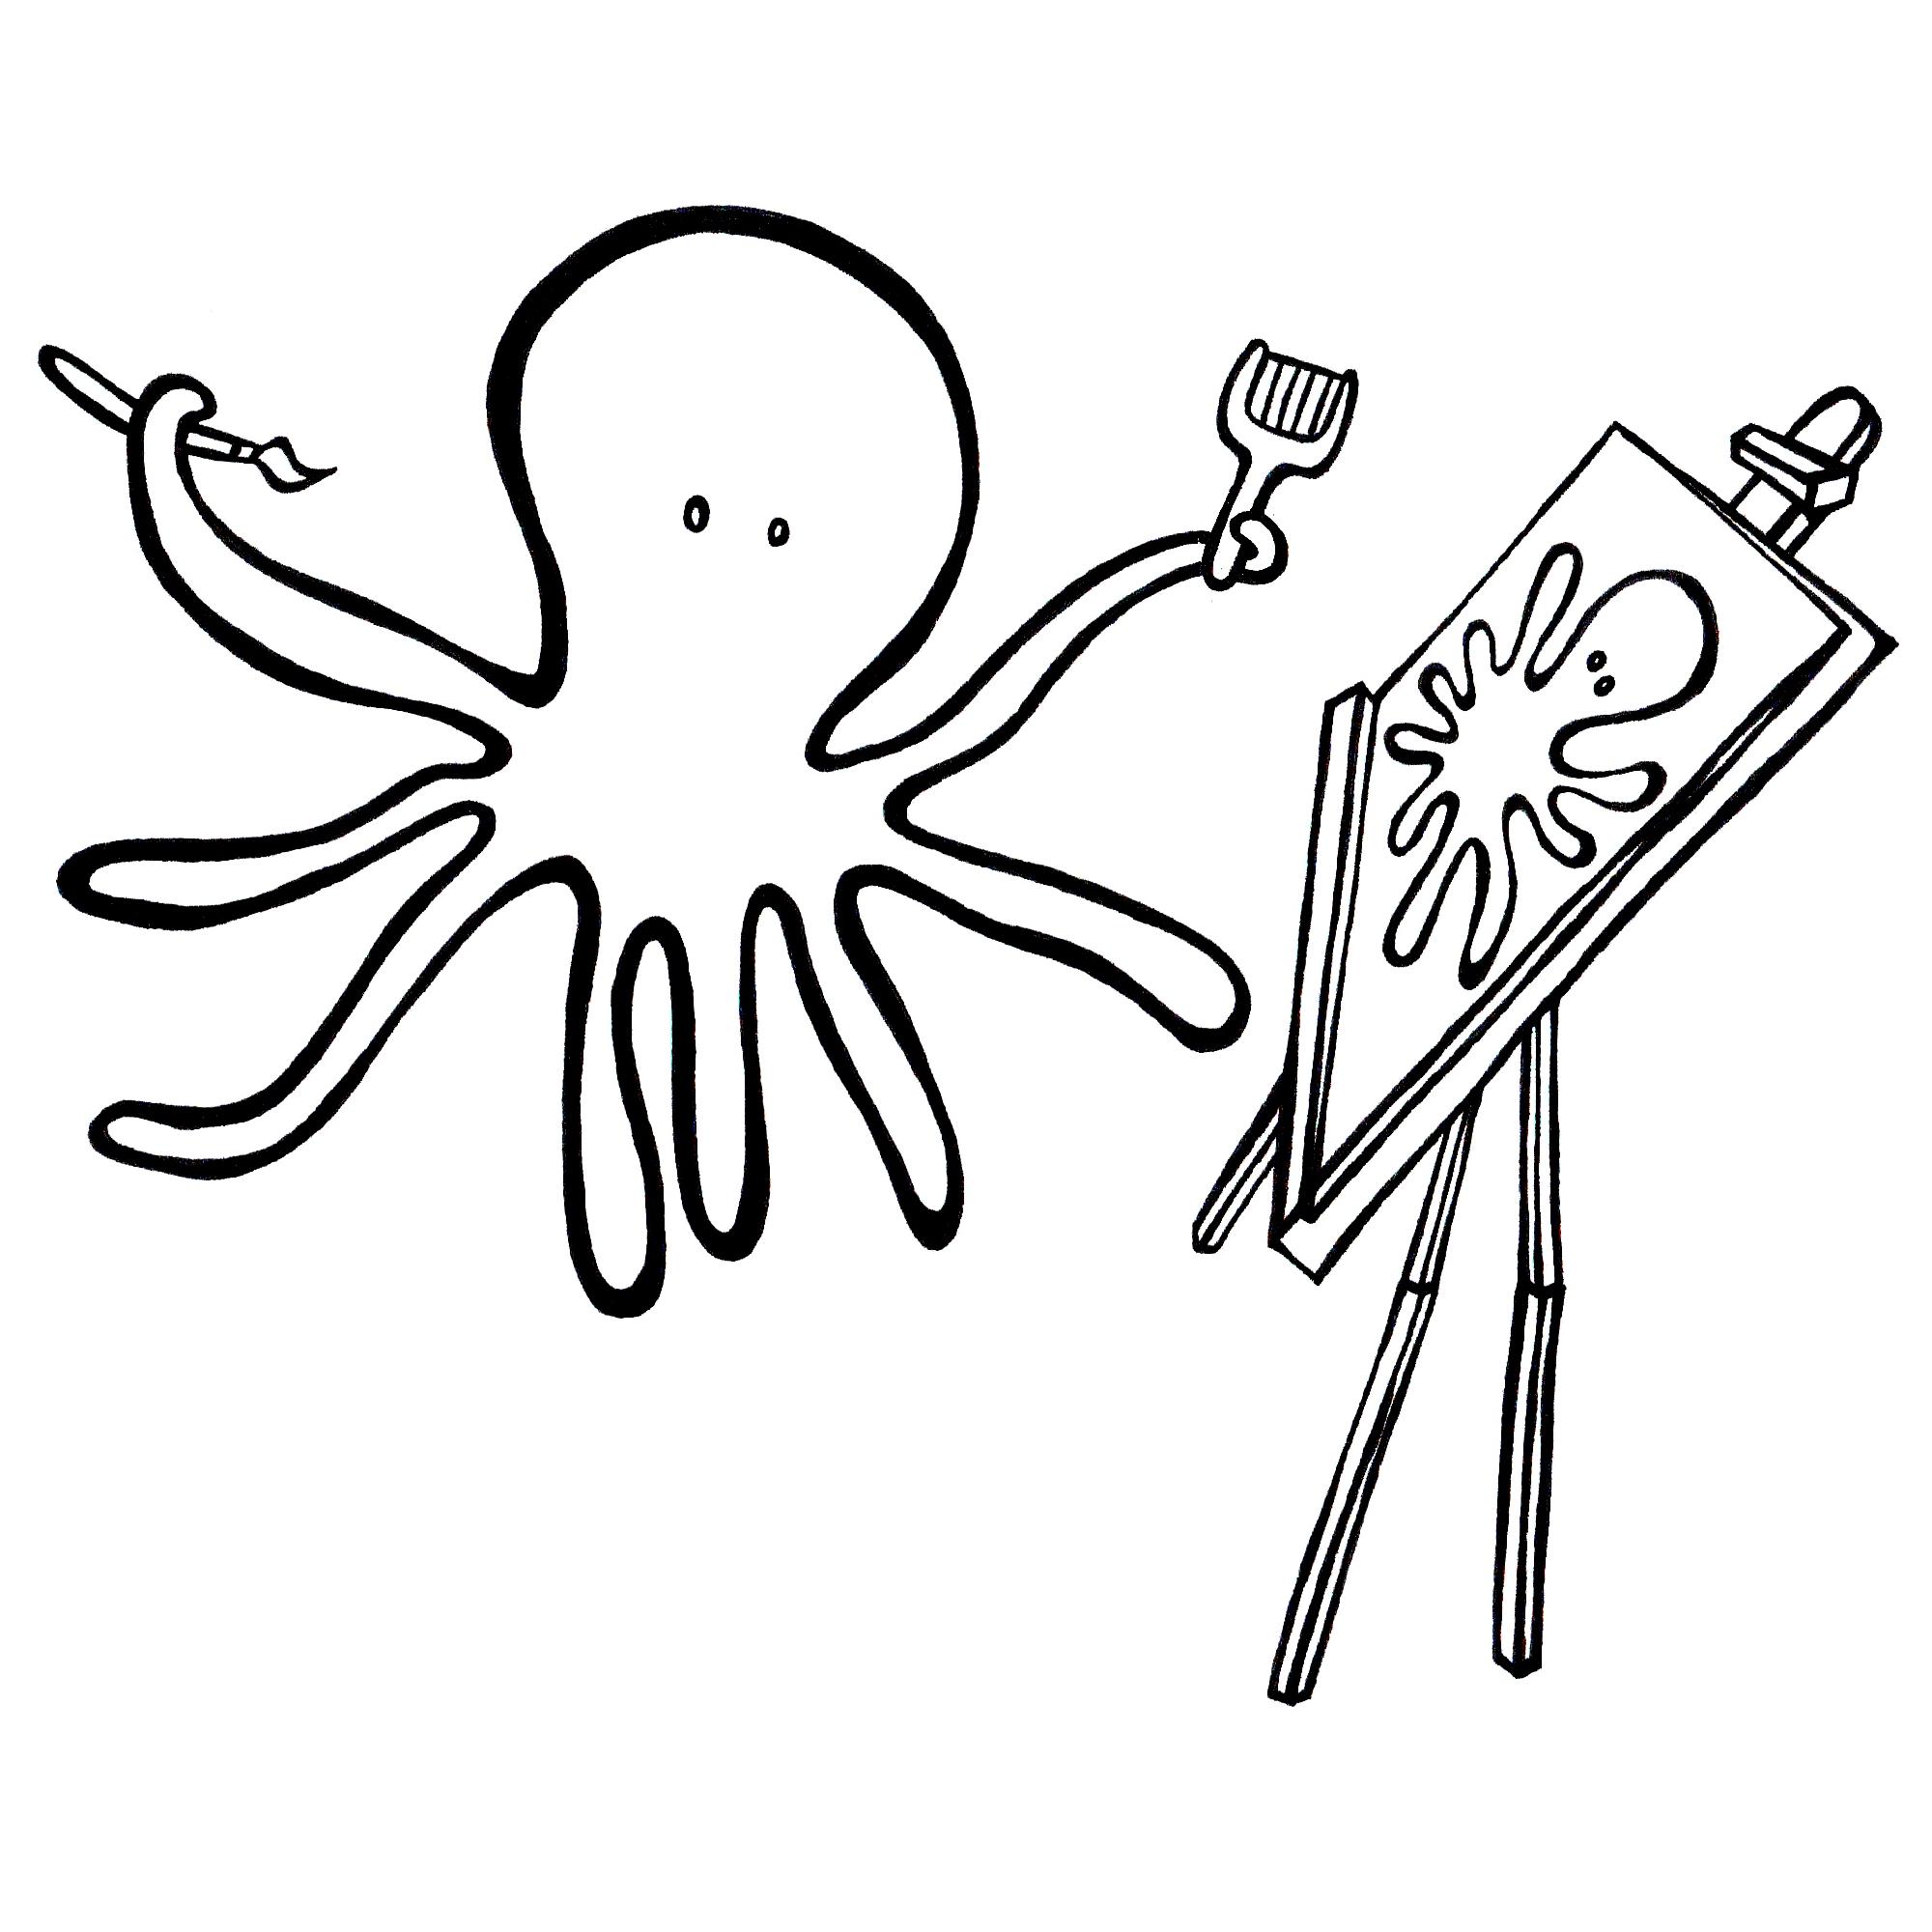 ozric' the artistic octopus, cartoon animal colouring book pen ...